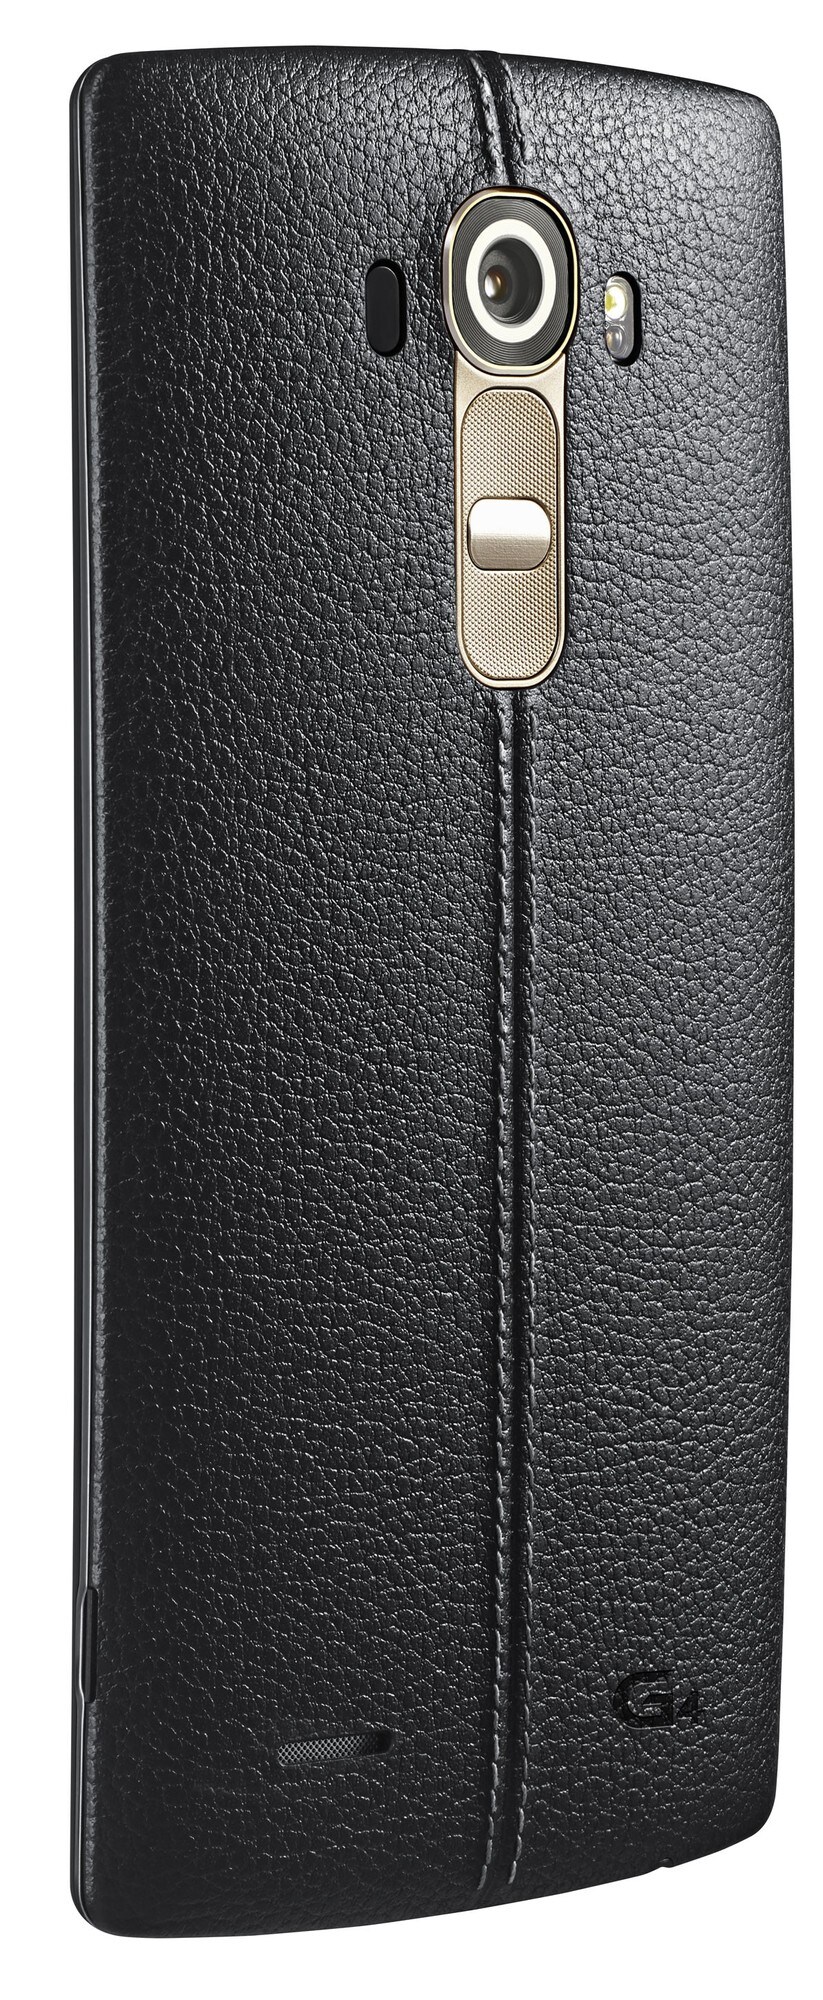 LG G4 32GB smarttelefon (sort skinn) - Mobiltelefon - Elkjøp